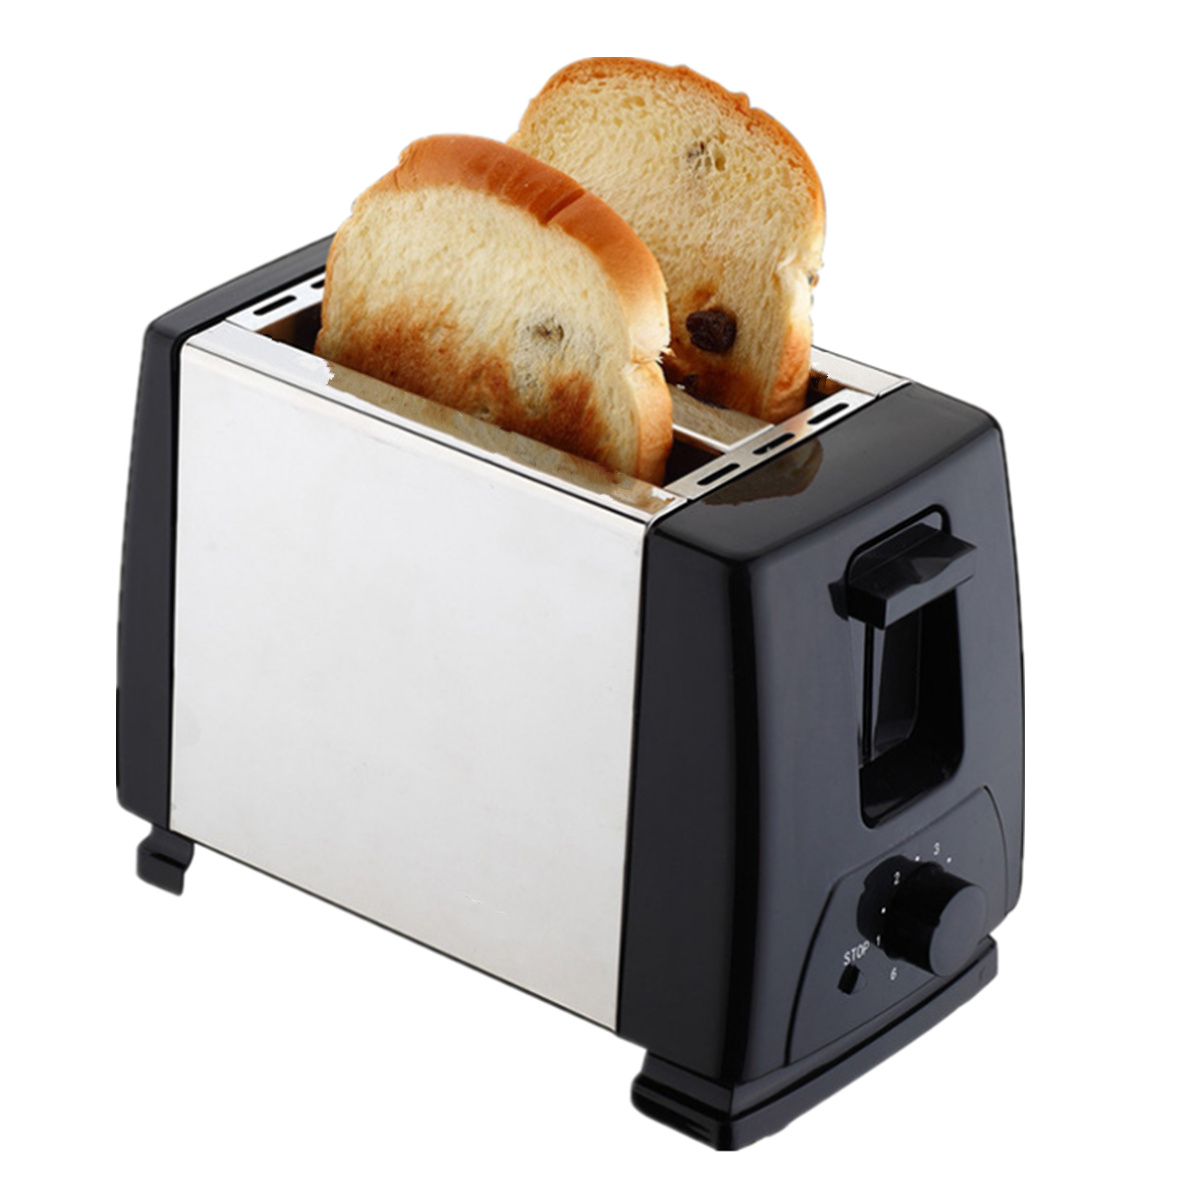 آلة تحميص الخبز محمصة خبز كهربائية في Banggood|التسوق العربية